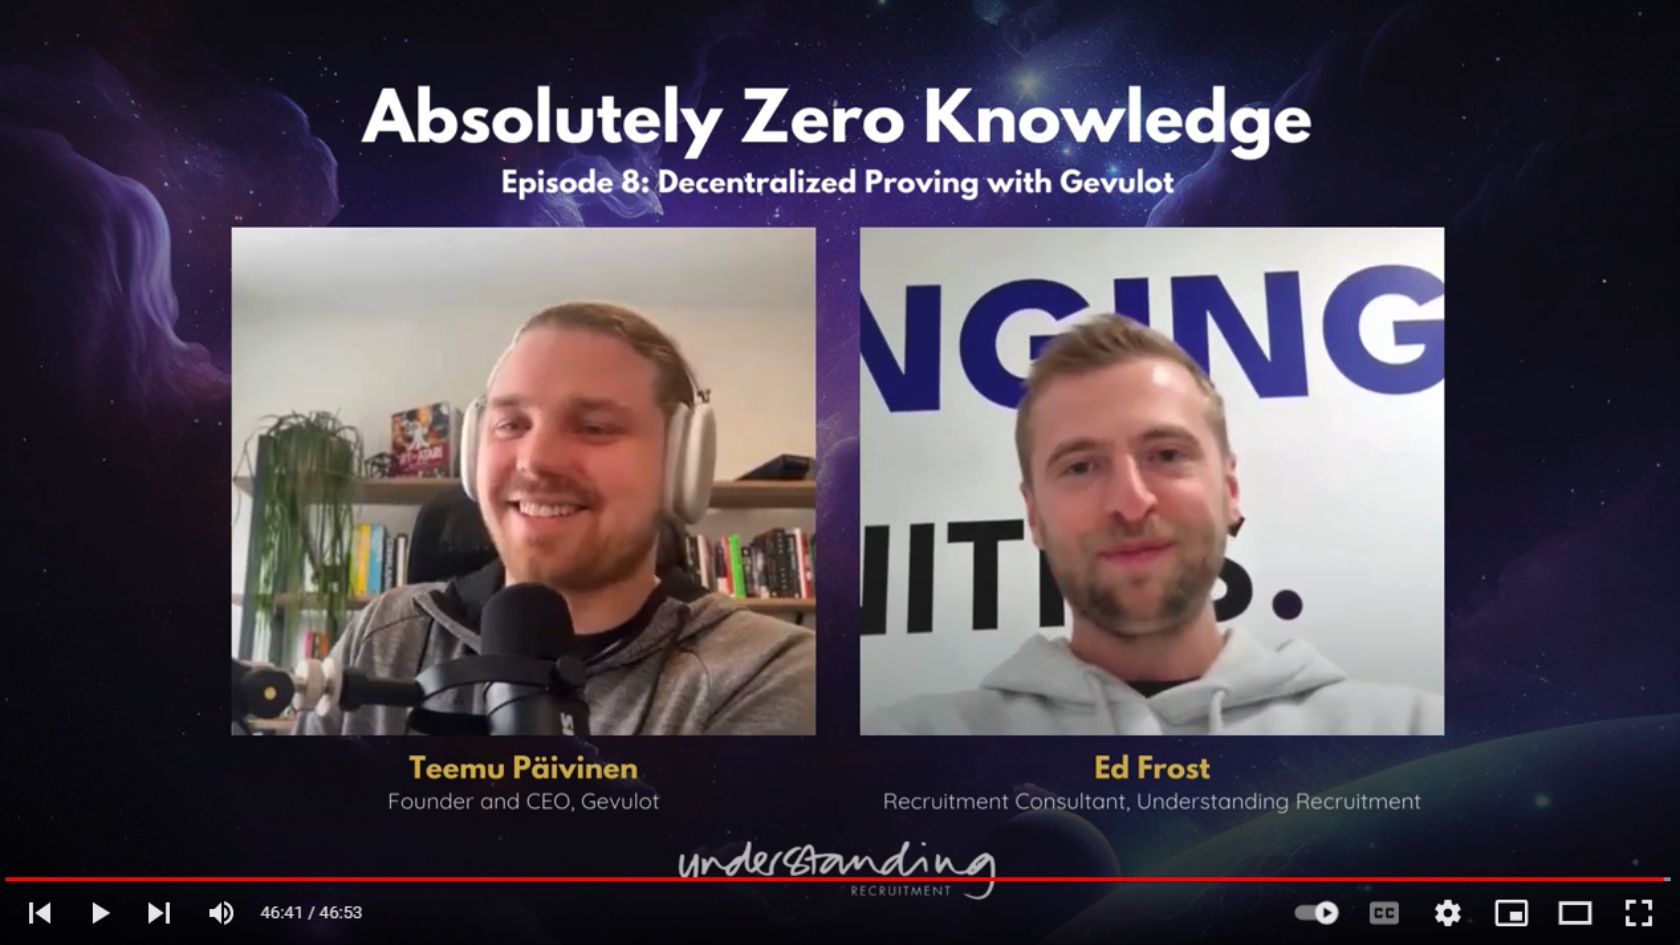 Absolutely Zero Knowledge Episode 8: Teemu Päivinen